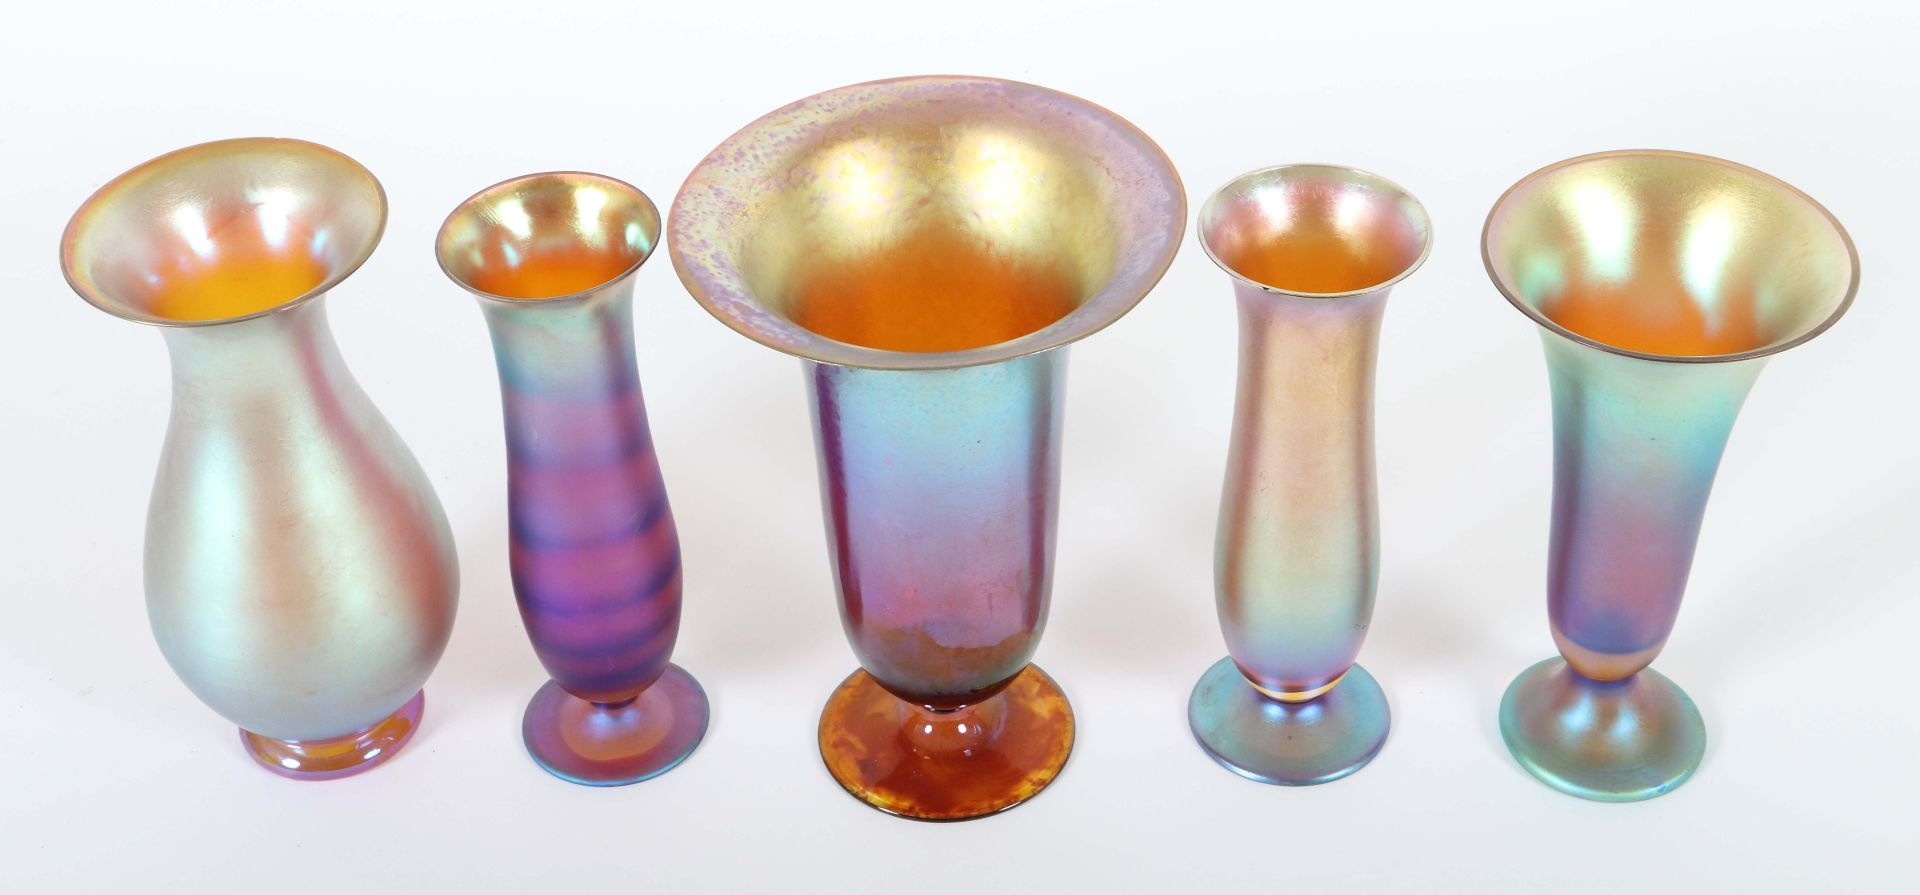 5 variierende "Myra"-Vasen WMF, - Bild 2 aus 2